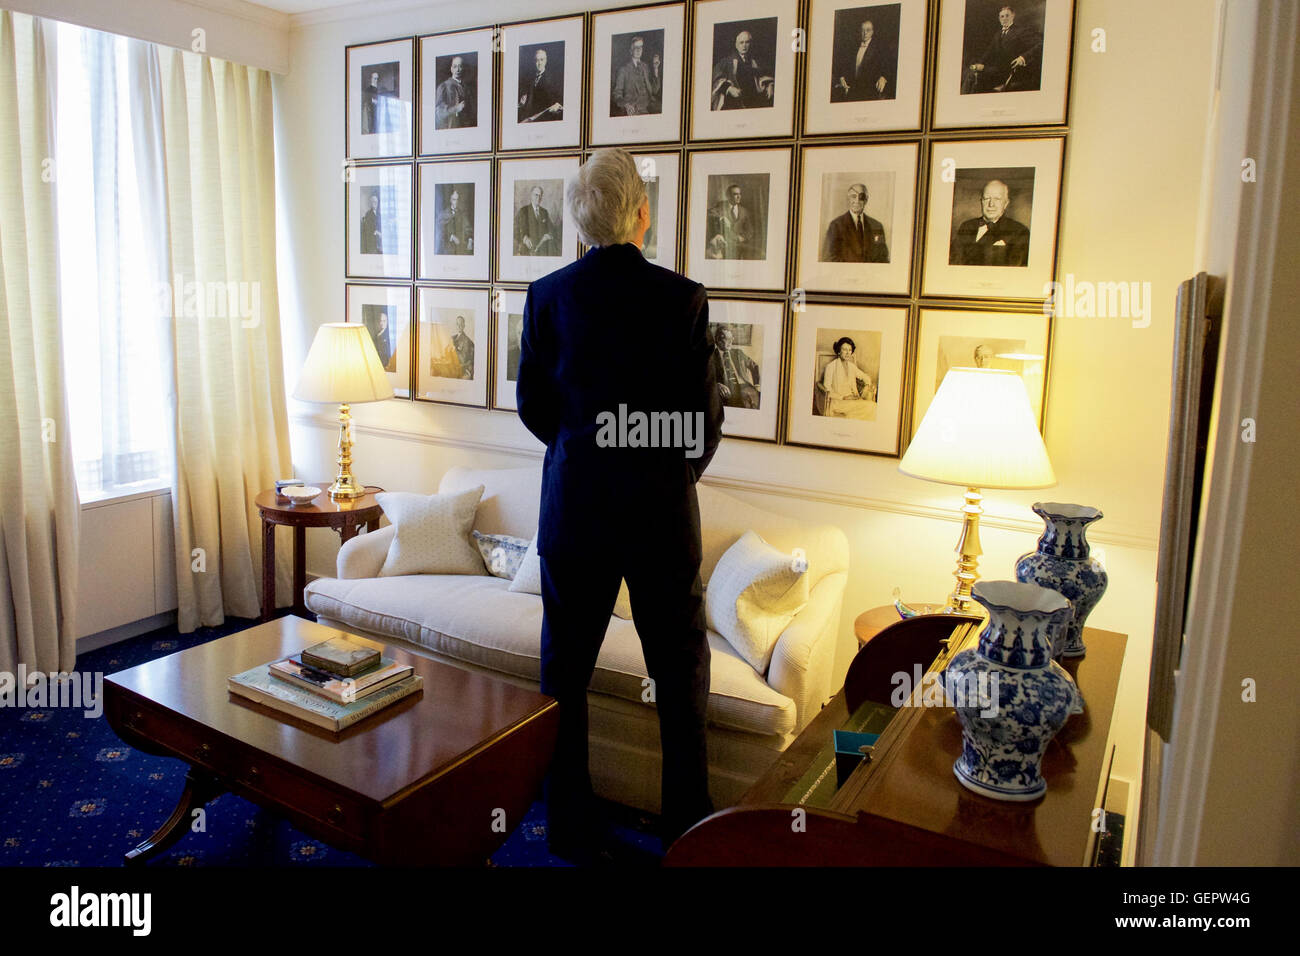 Kerry secrétaire regarde des portraits d'anciens ambassadeurs américains à la Cour de Saint James lors d'une visite à l'ambassade des États-Unis à Londres Banque D'Images